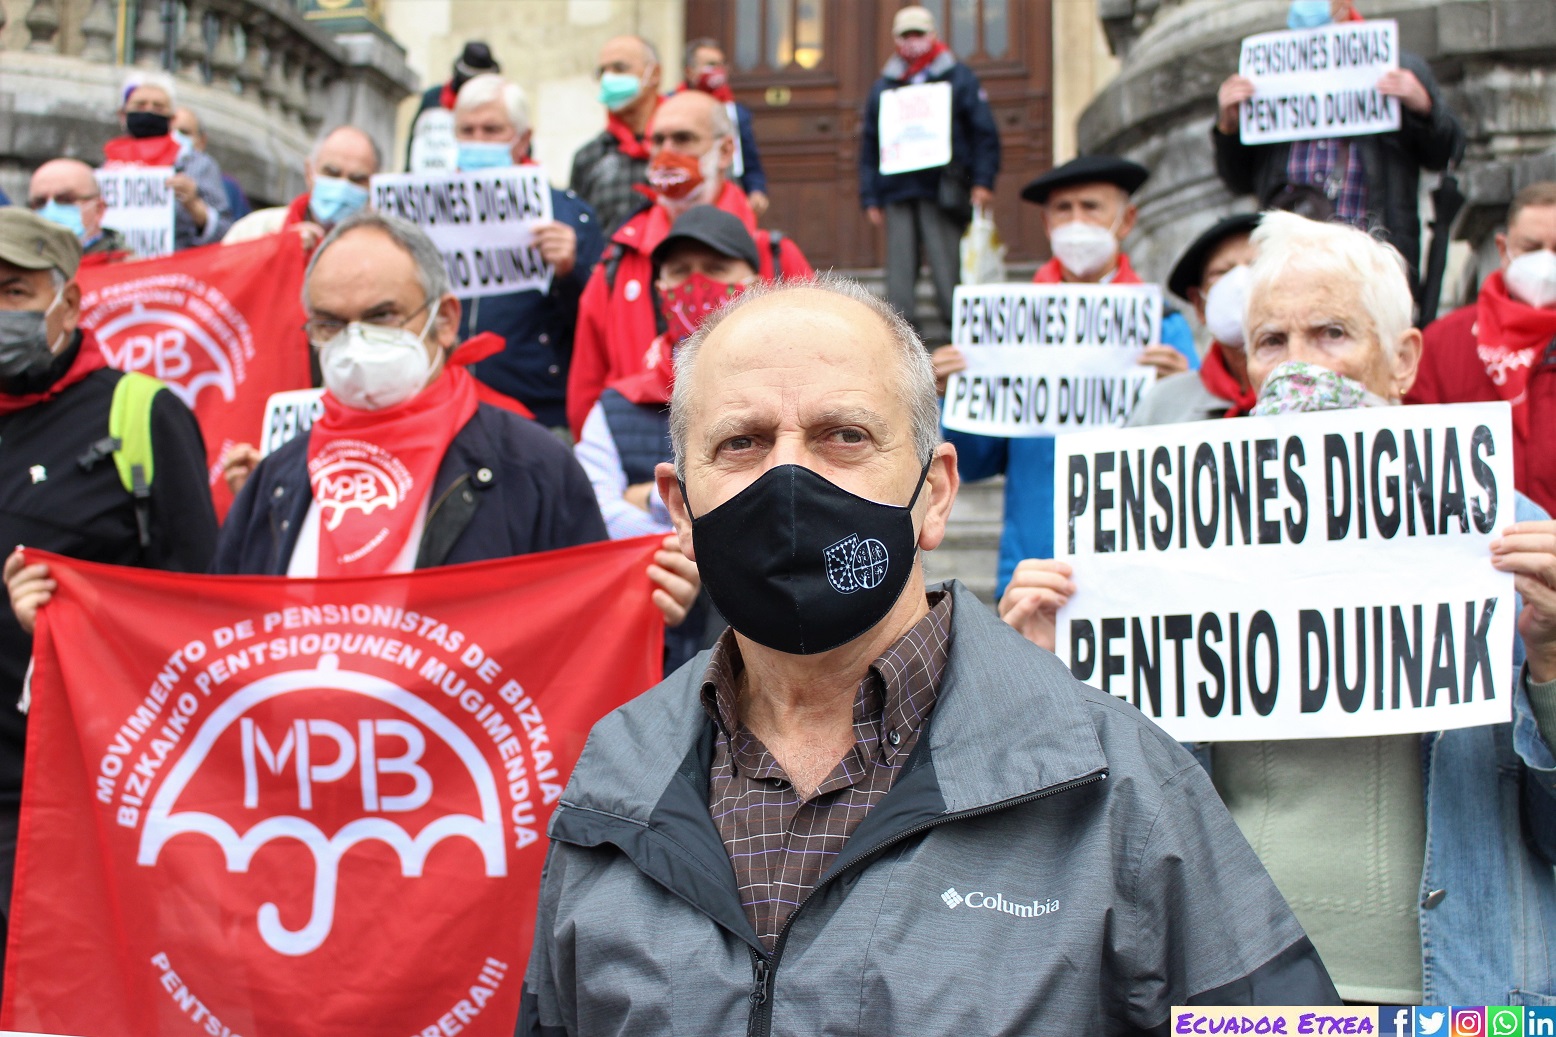 pensionistas-vascos-bilbao-pensiones-dignas-carta-abierta-partidos-políticos-reformas-pacto-toledo-sistema-público-gobierno-españa